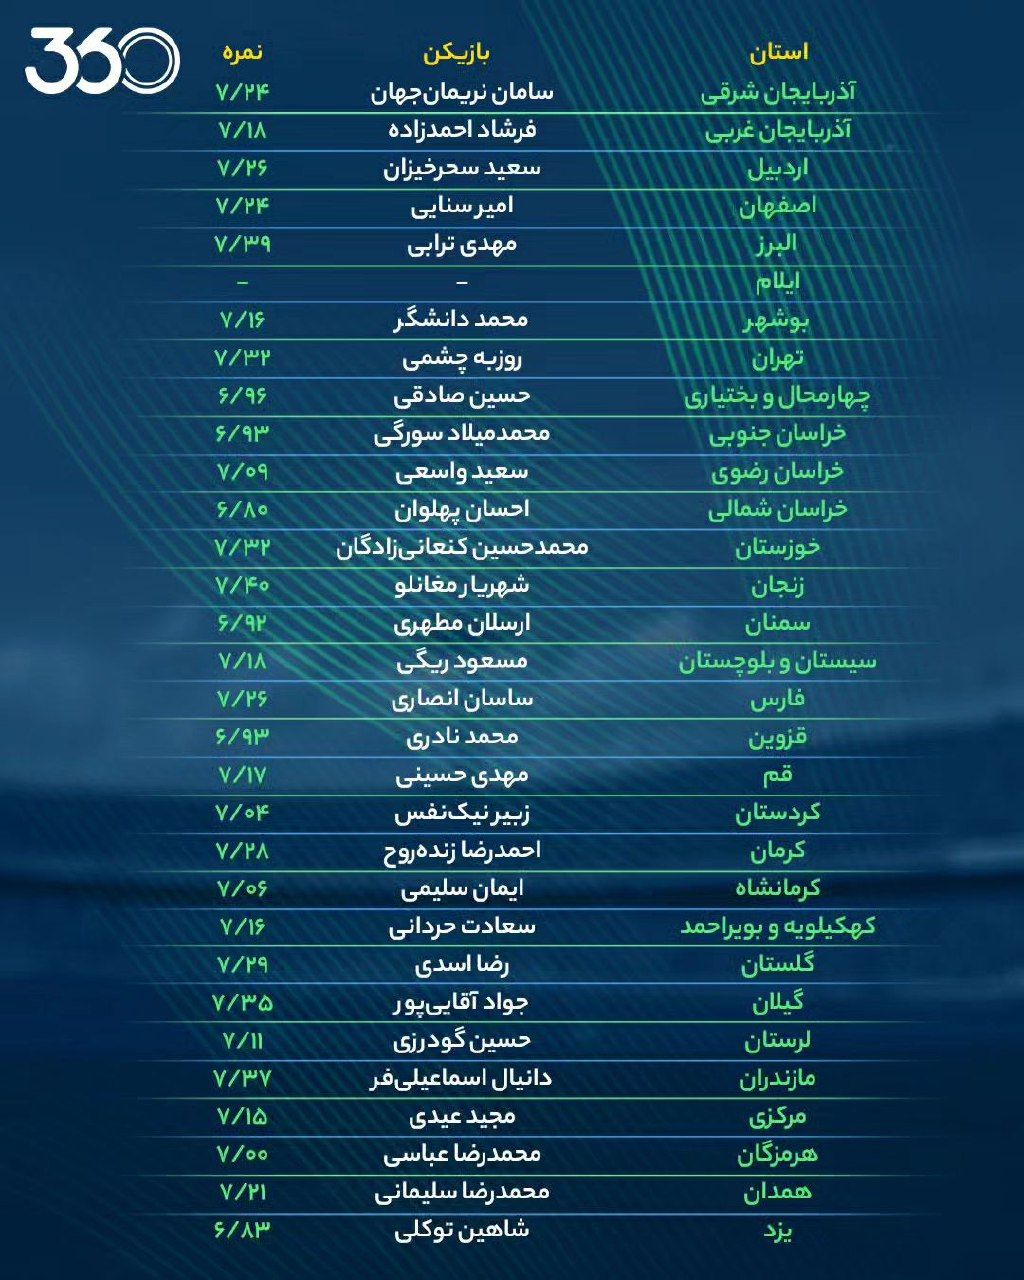 بهترن فوتبالیست هر استان ایران را بشناسید